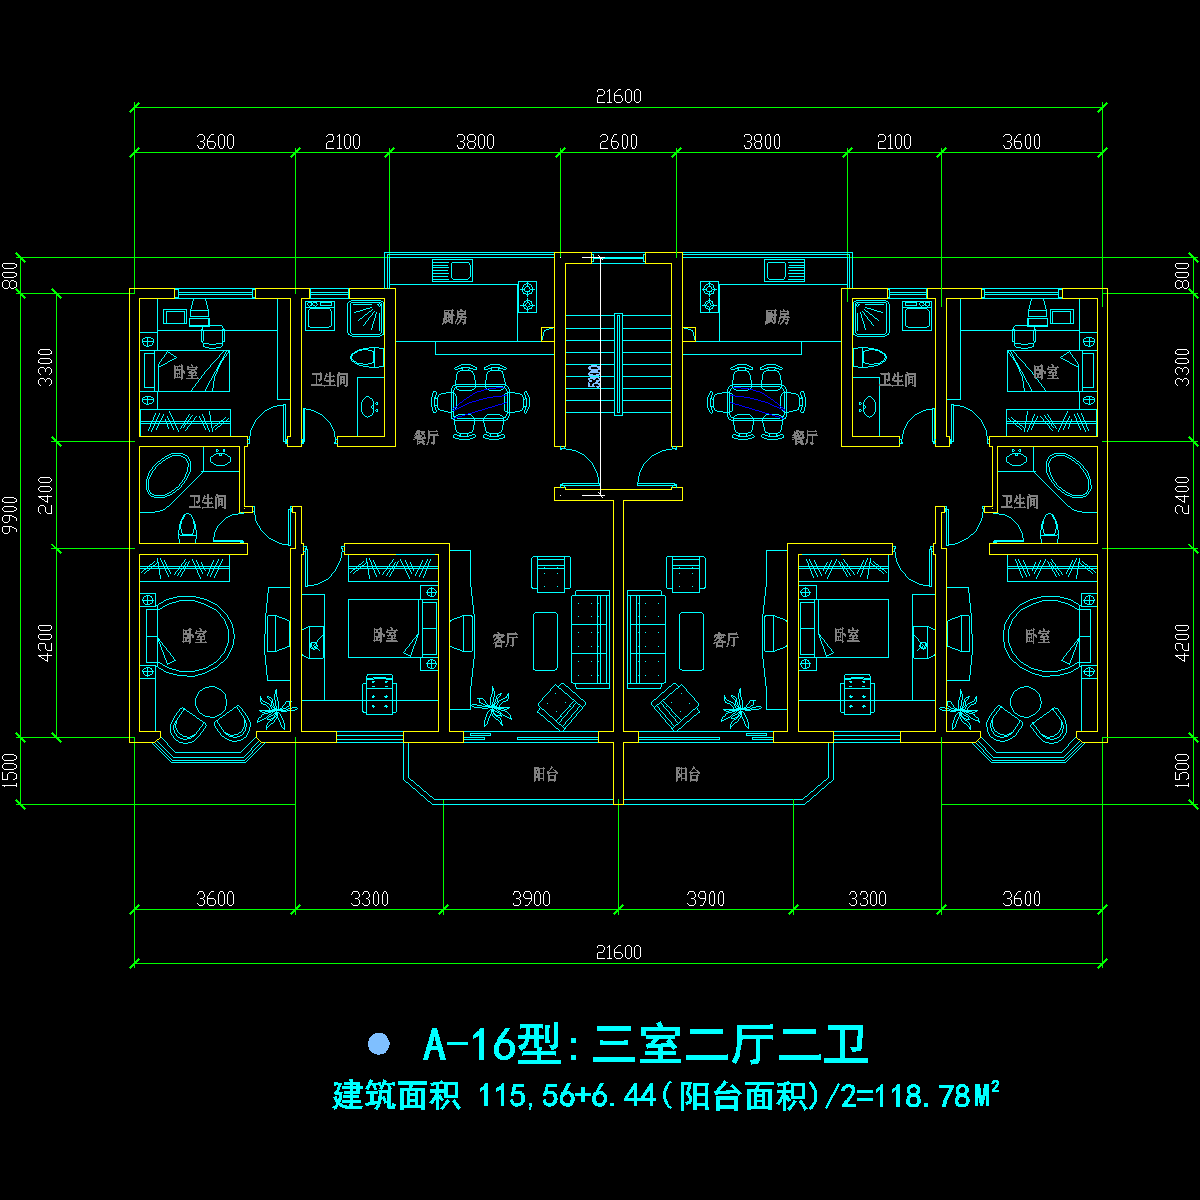 板式多层一梯二户三室二厅二卫户型CAD图纸(119/119)